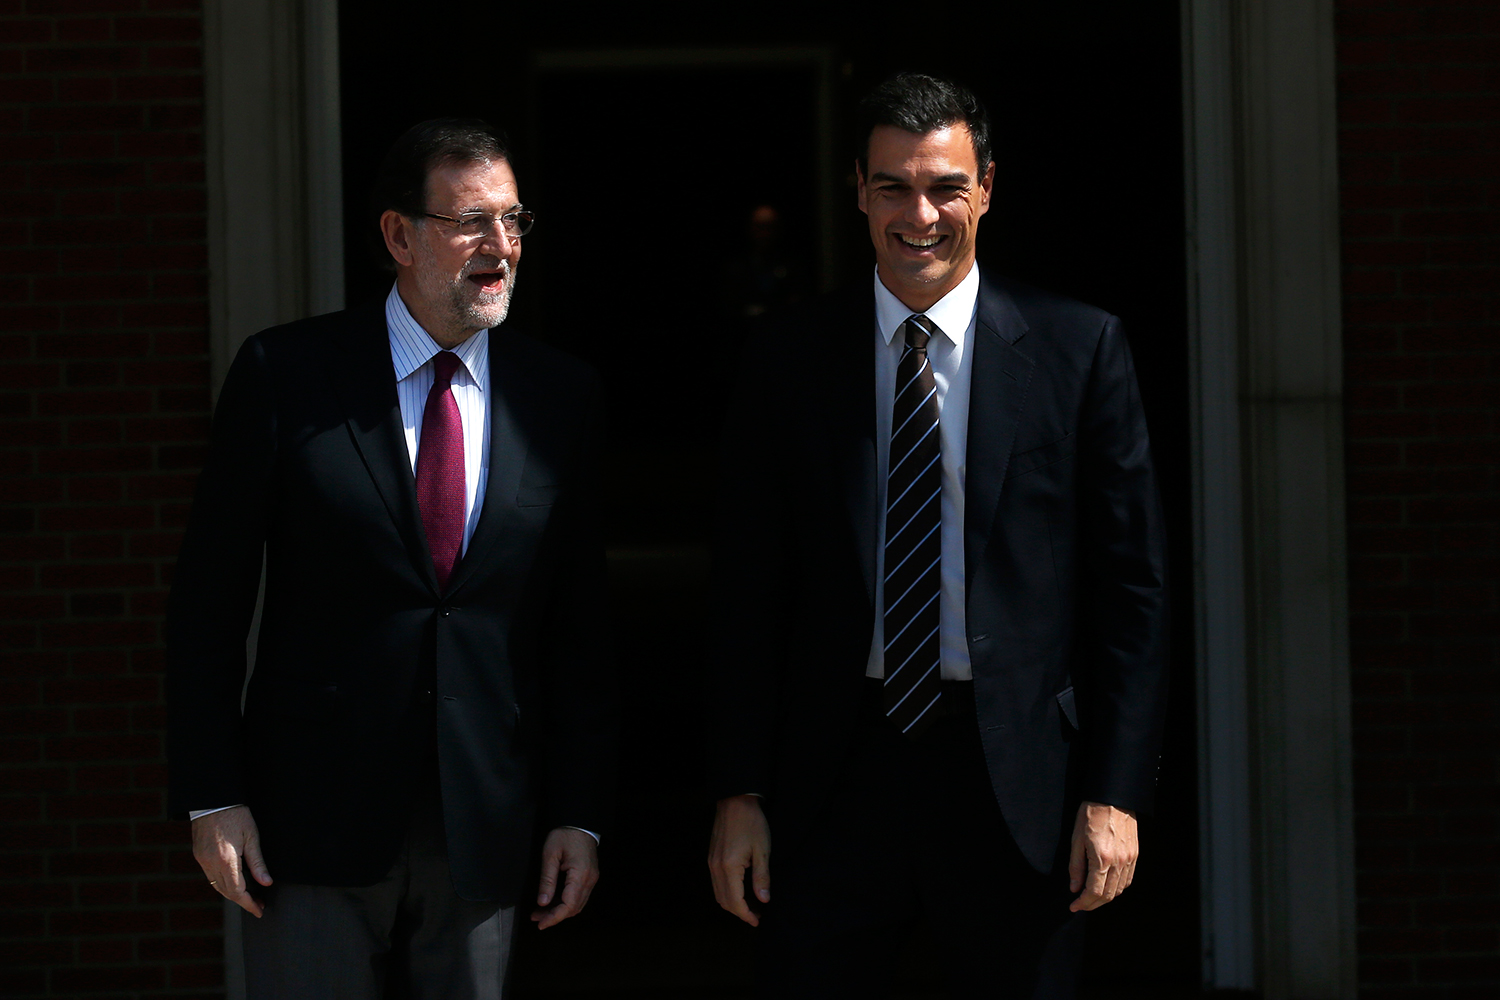 Ni Rajoy, ni Sánchez: líderes de ambos partidos presionan para apartar a sus candidatos antes del 20